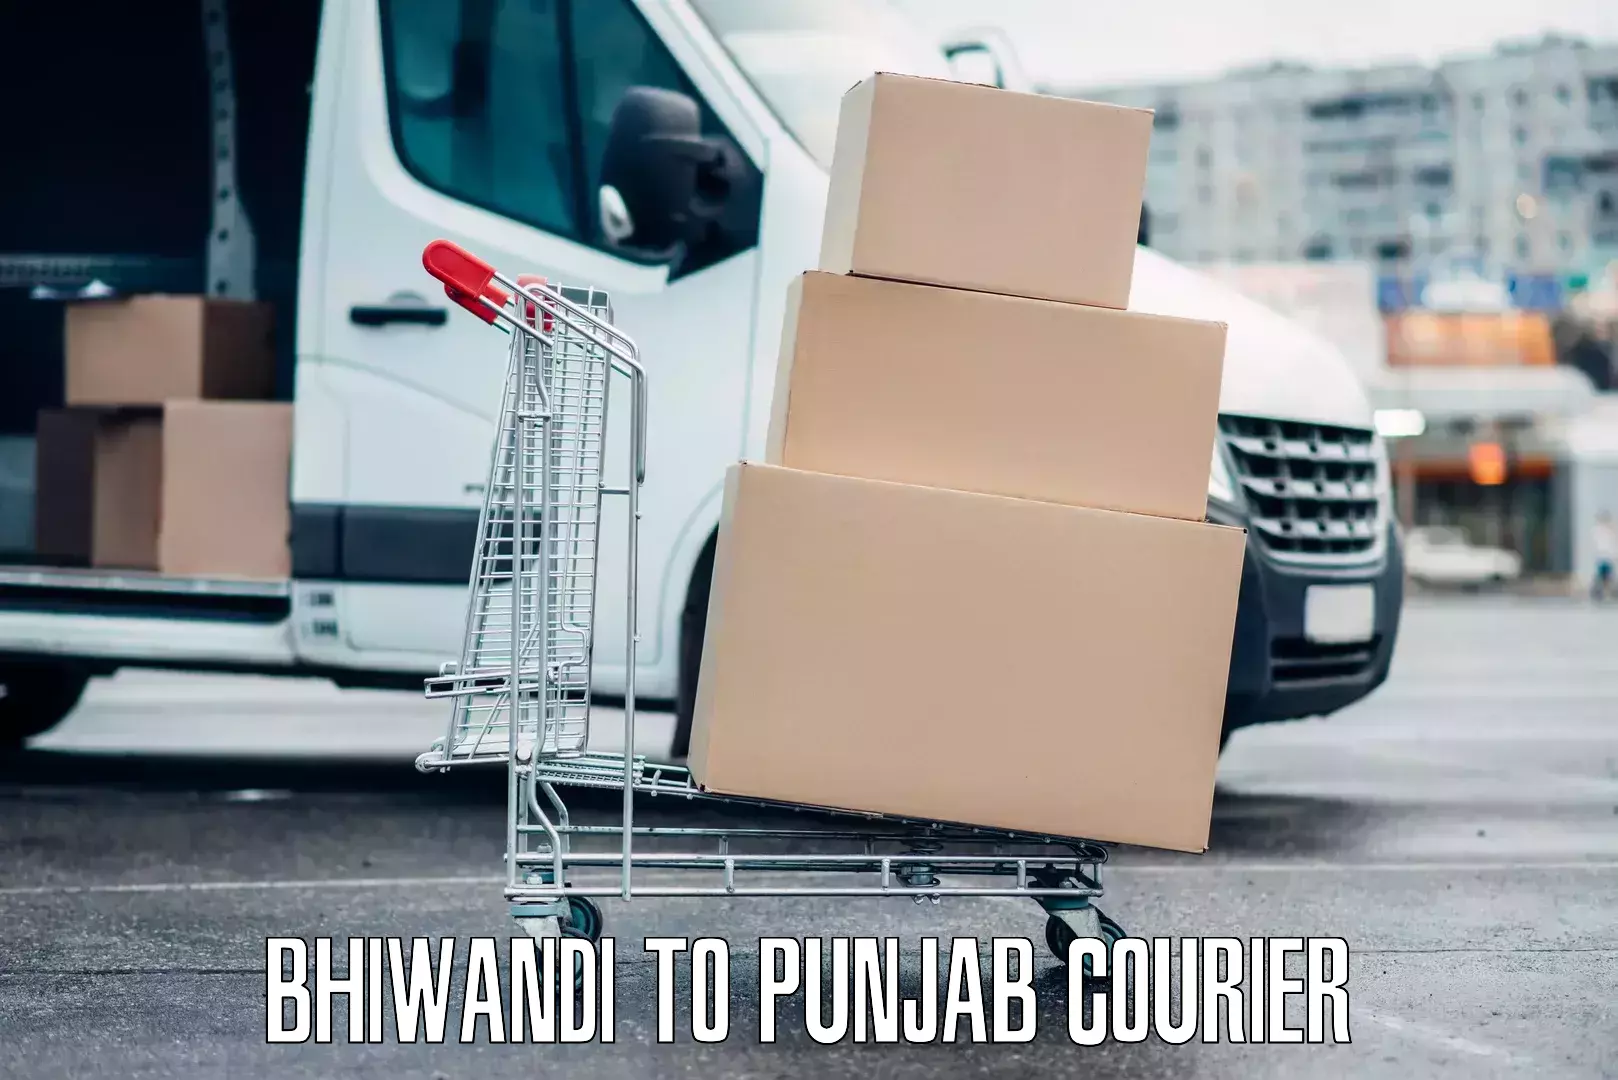 Emergency baggage service Bhiwandi to Punjab